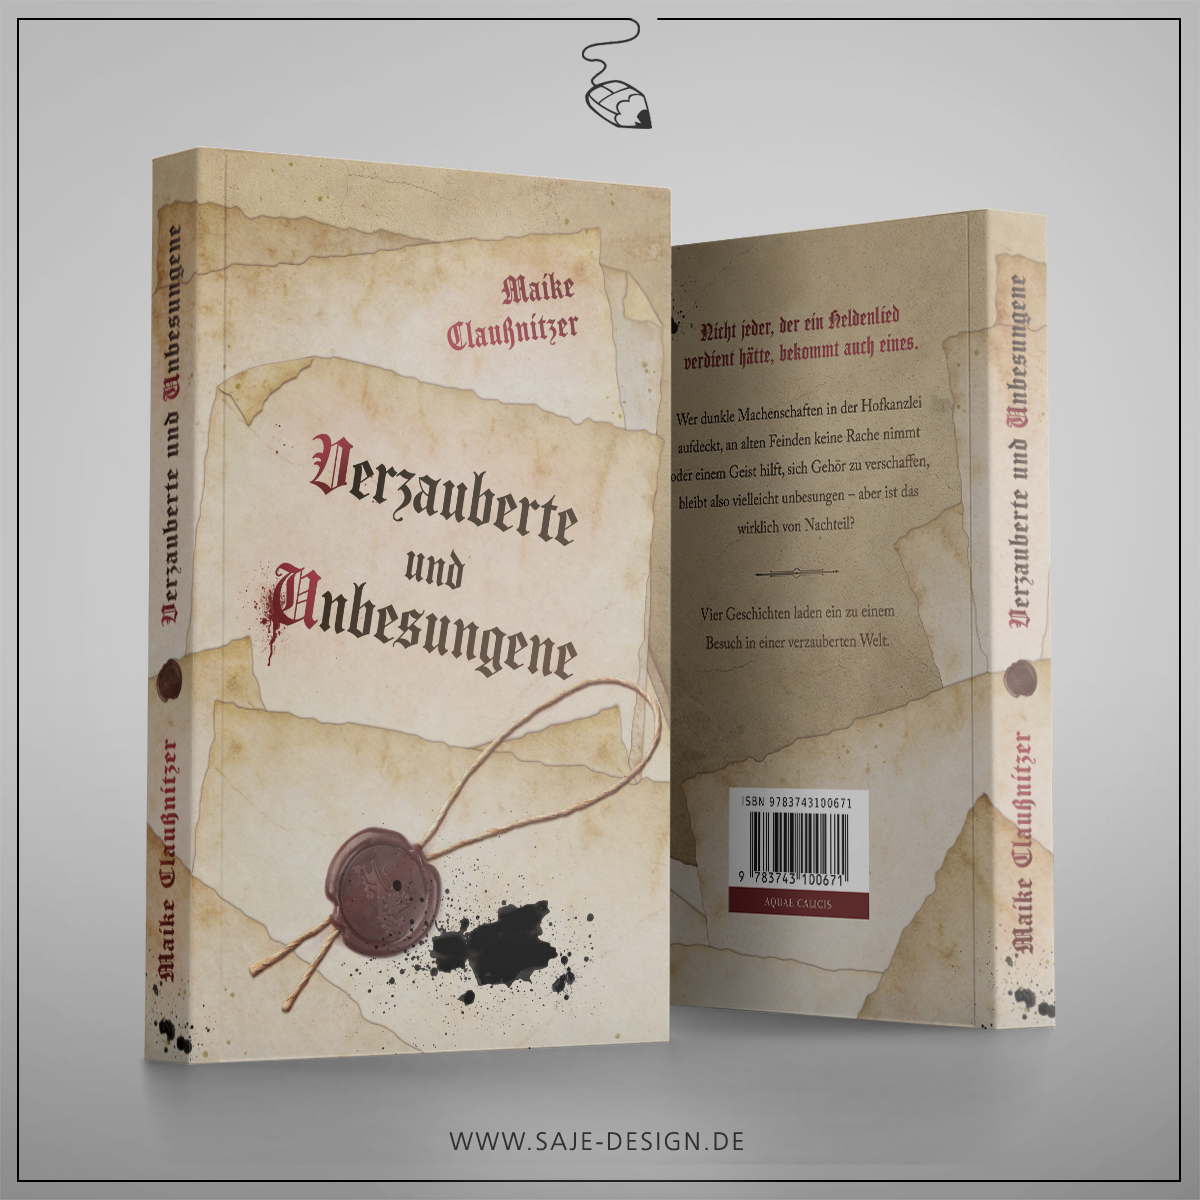 Buchumschlag für »Verzauberte und Unbesungene« von Maike Claußnitzer